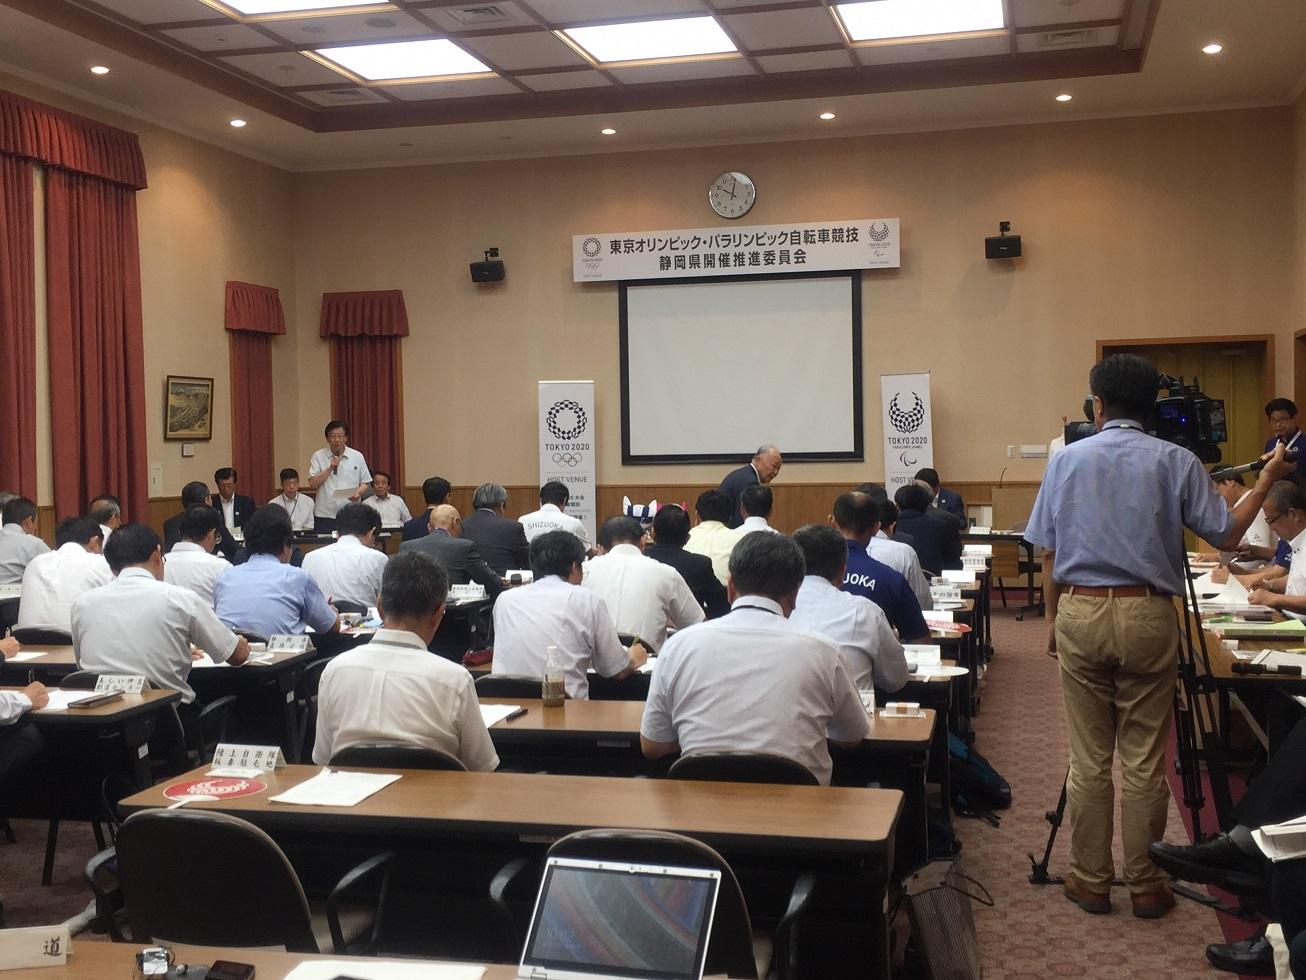 2018年8月24日 静岡県庁本館にて席に着き会議する委員の人々の写真